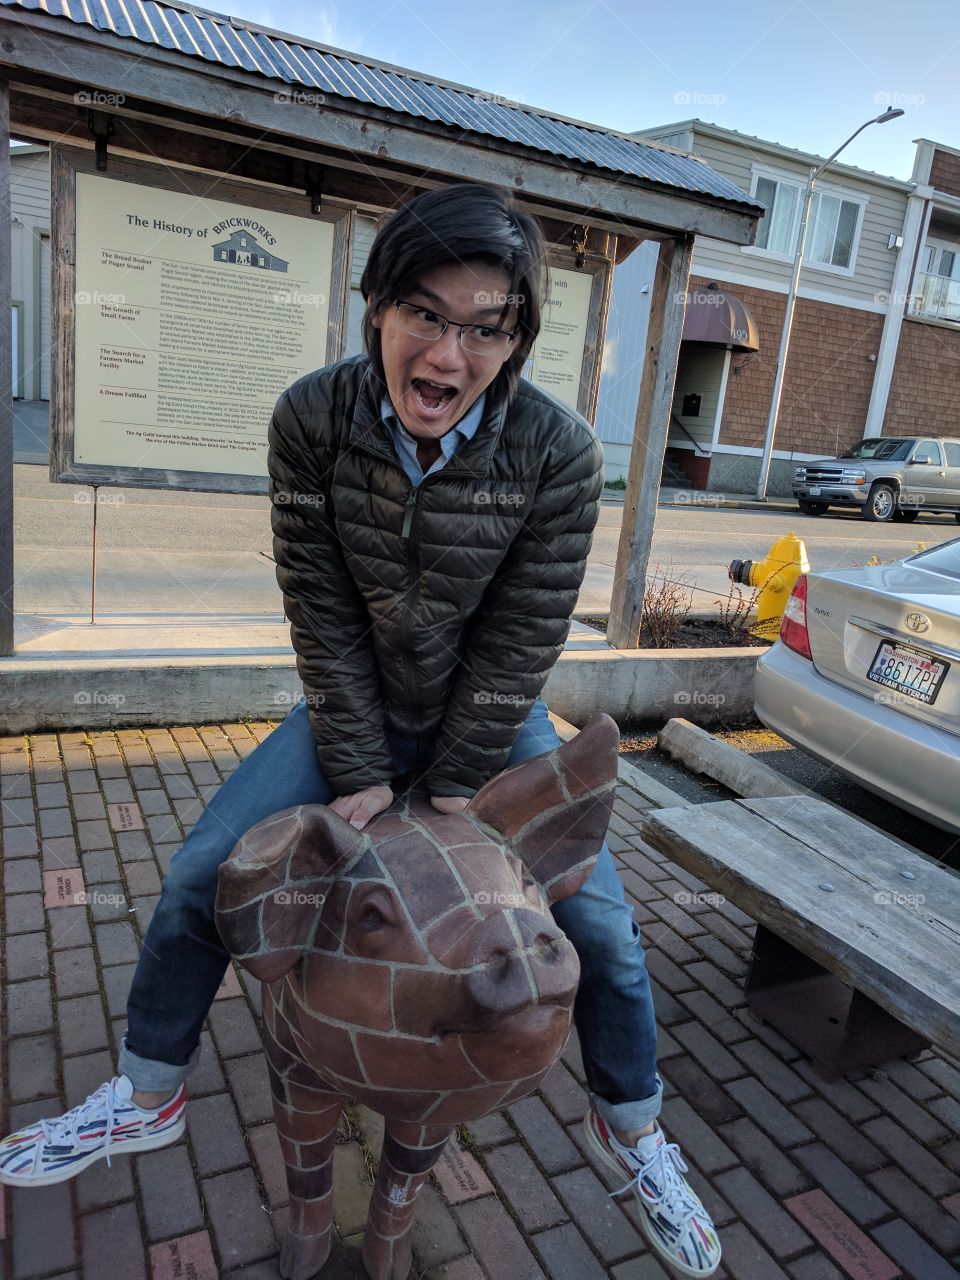 riding a brick piggy bank